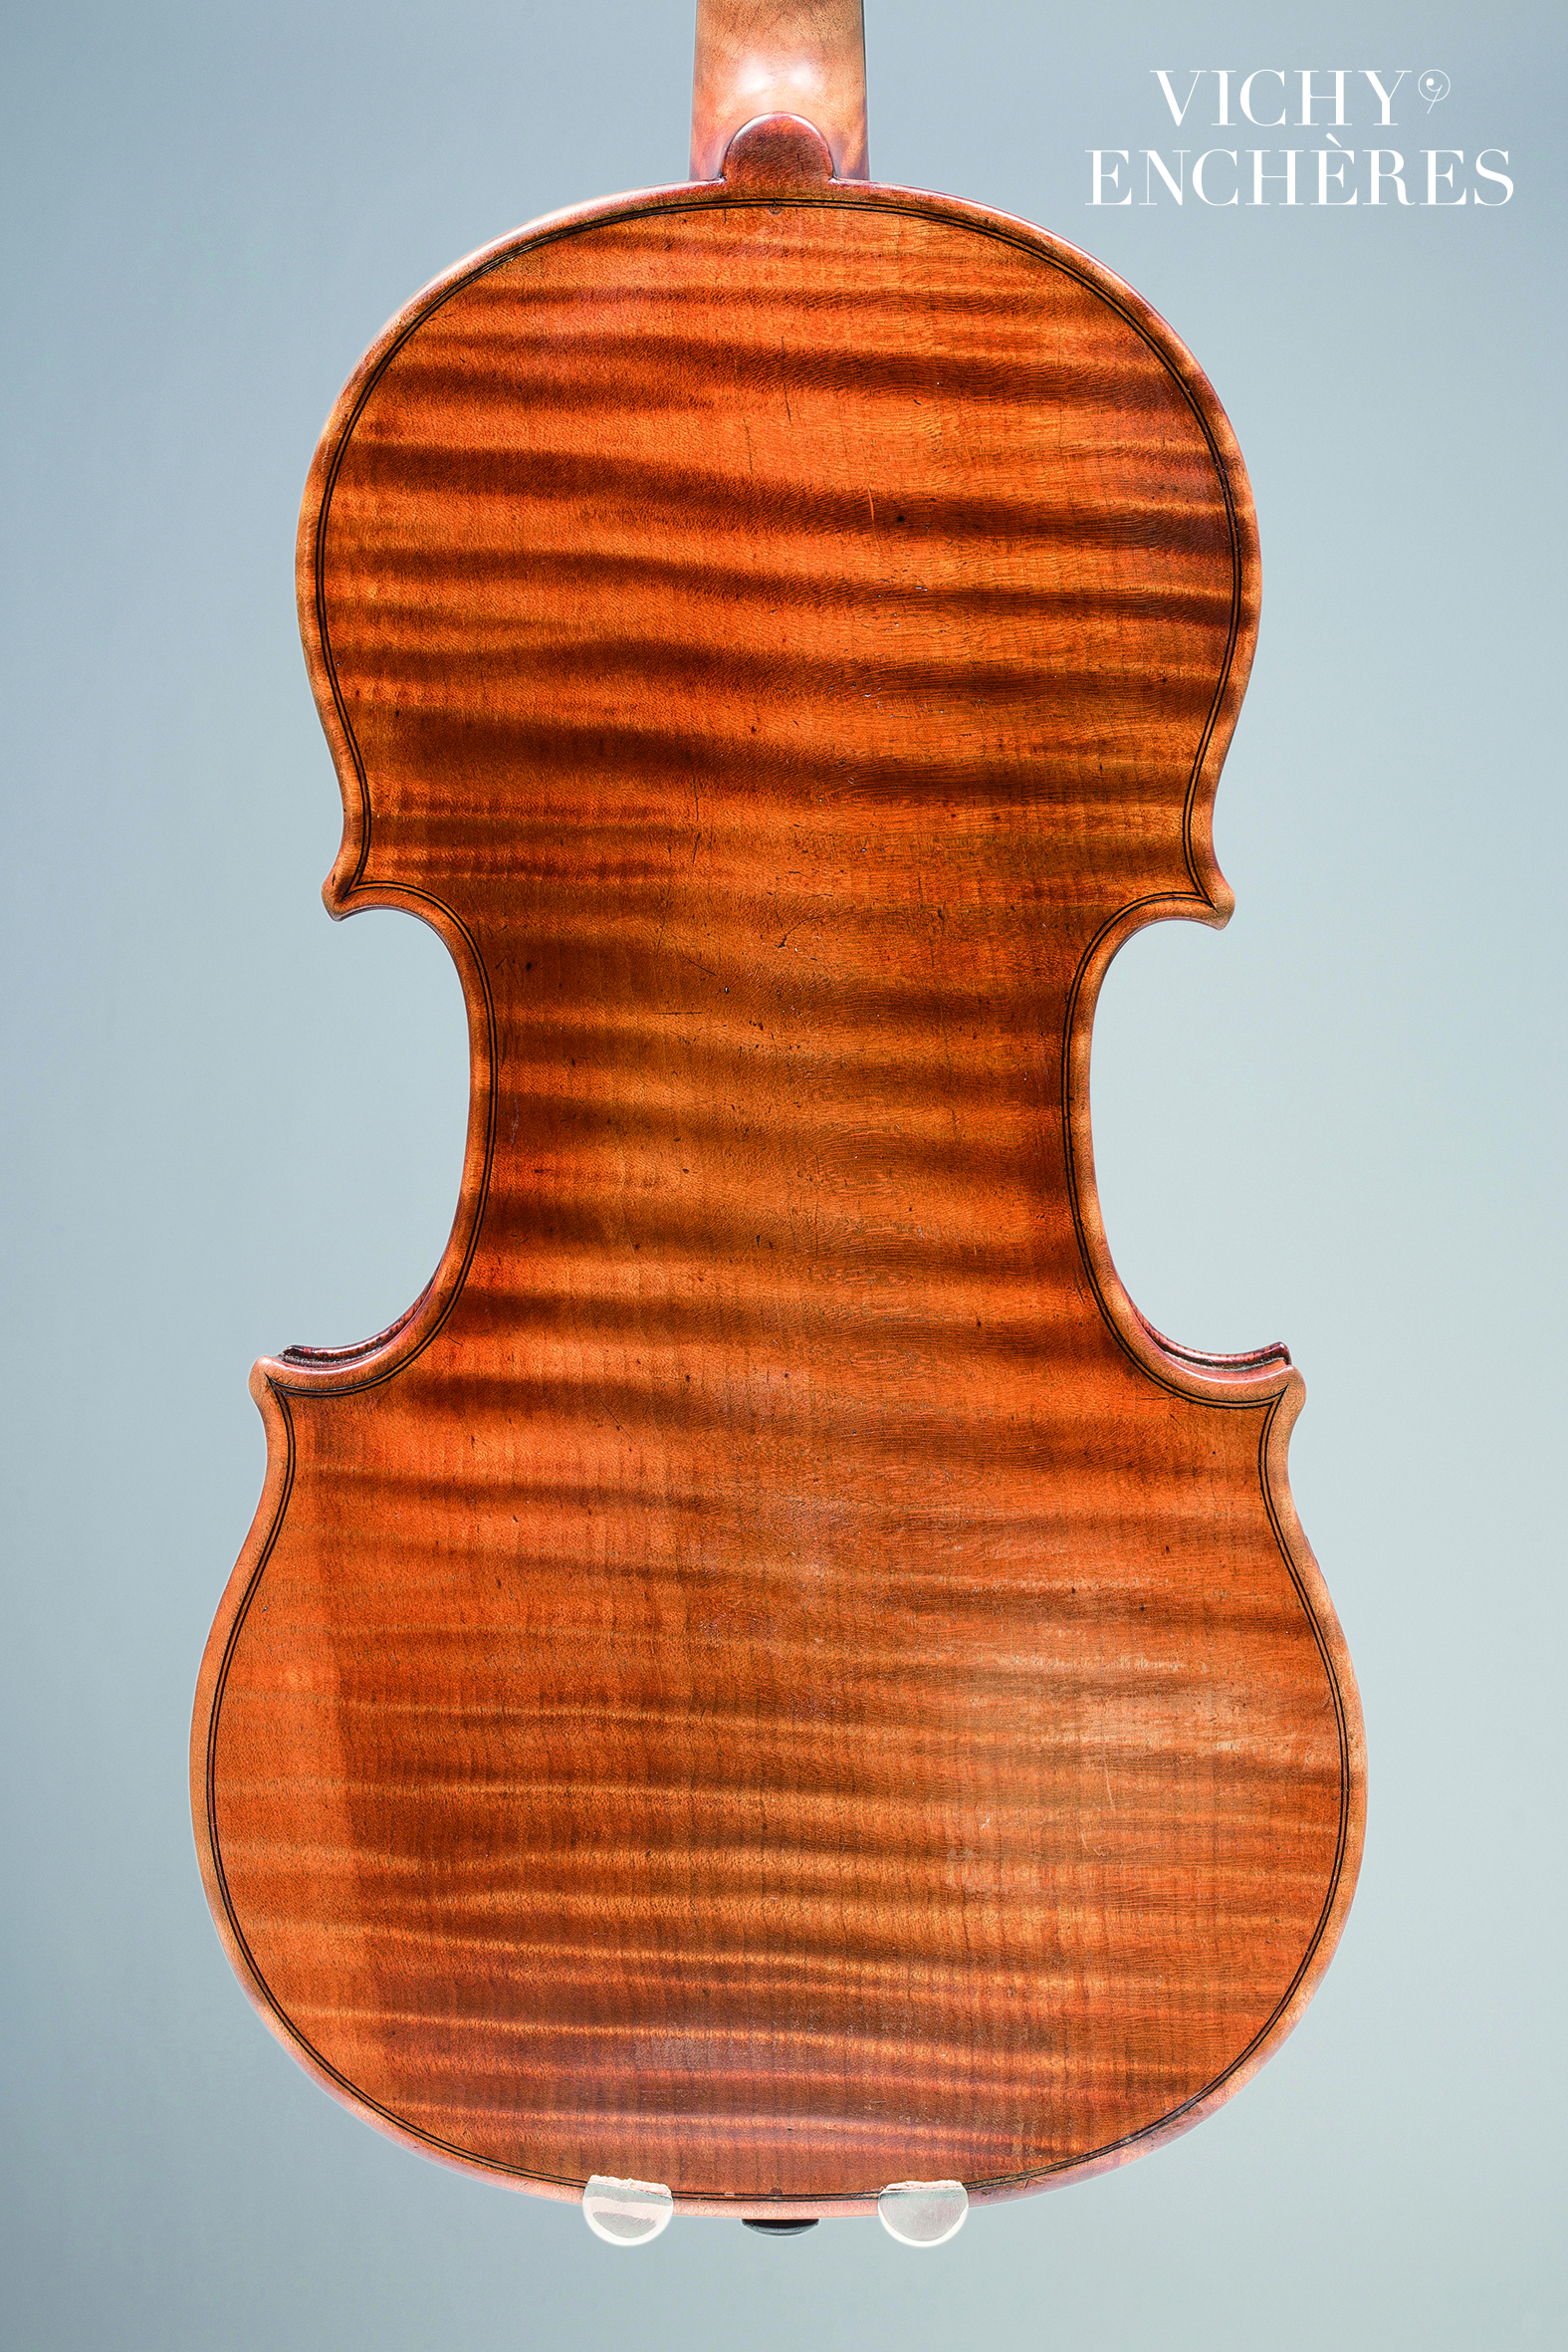 Violon de Jean-Baptiste VUILLAUME dit le "Faisan doré"